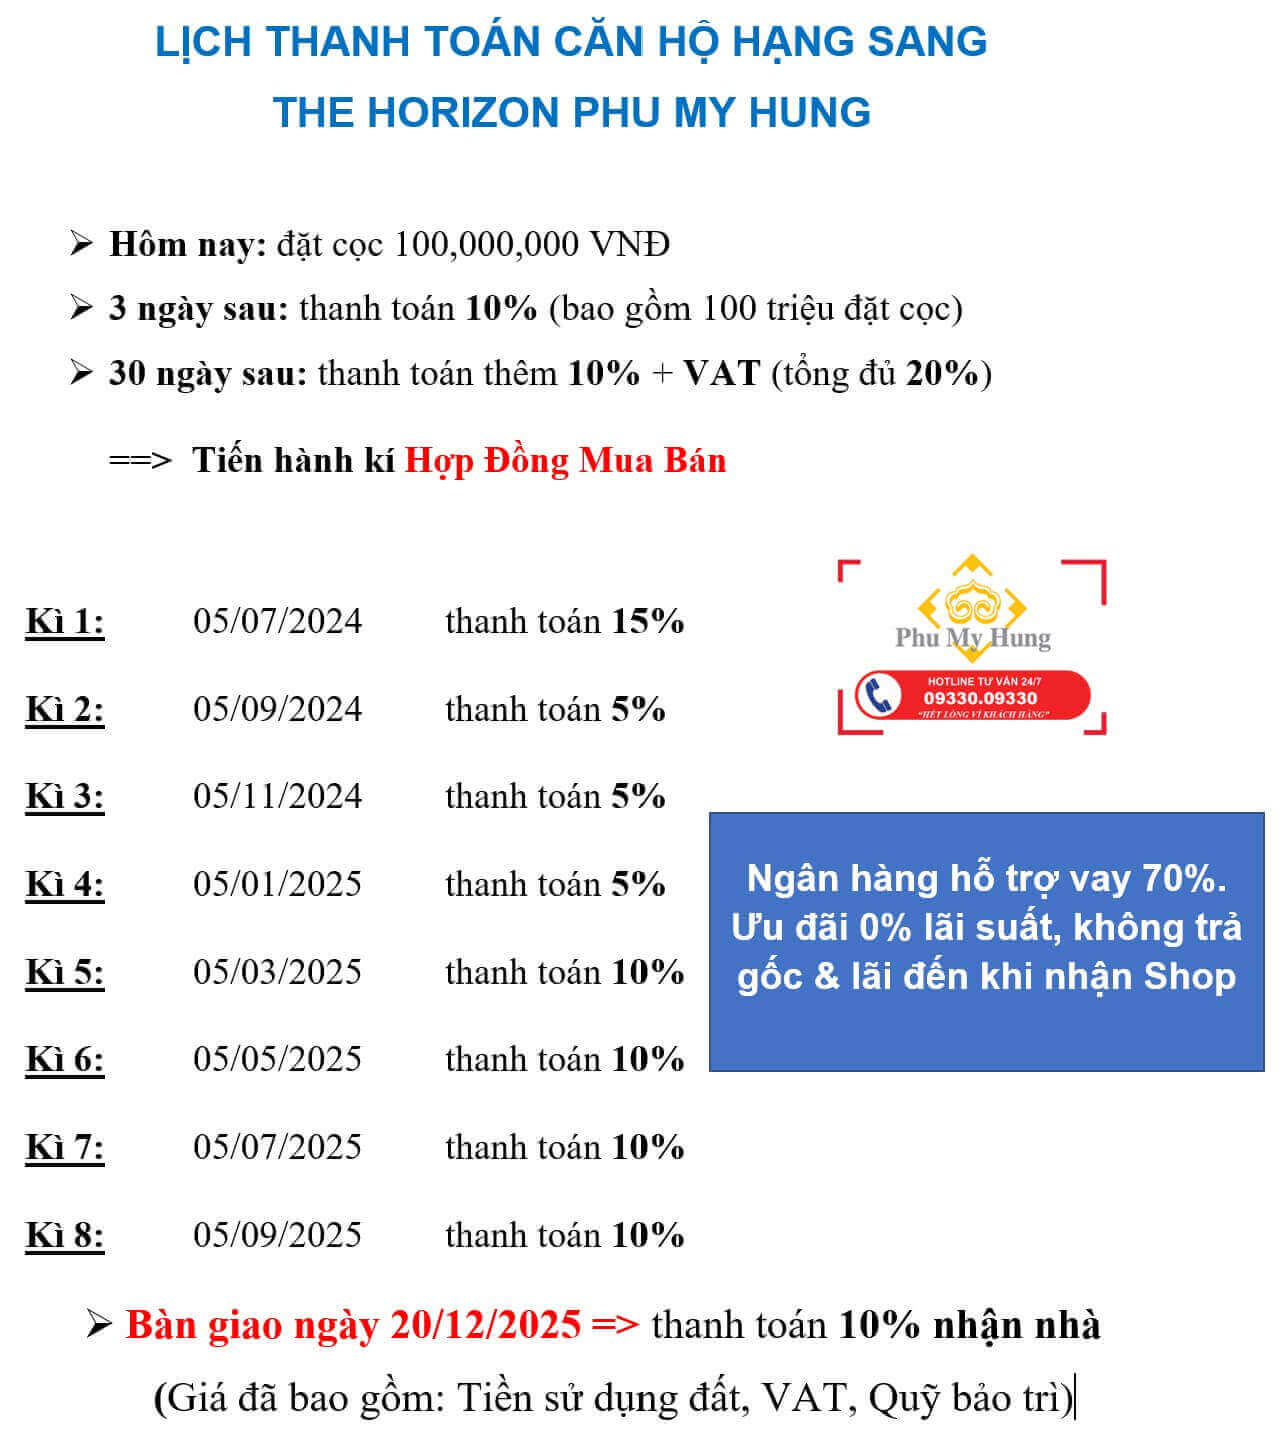 Lịch thanh toán The Horizon Phu My Hung